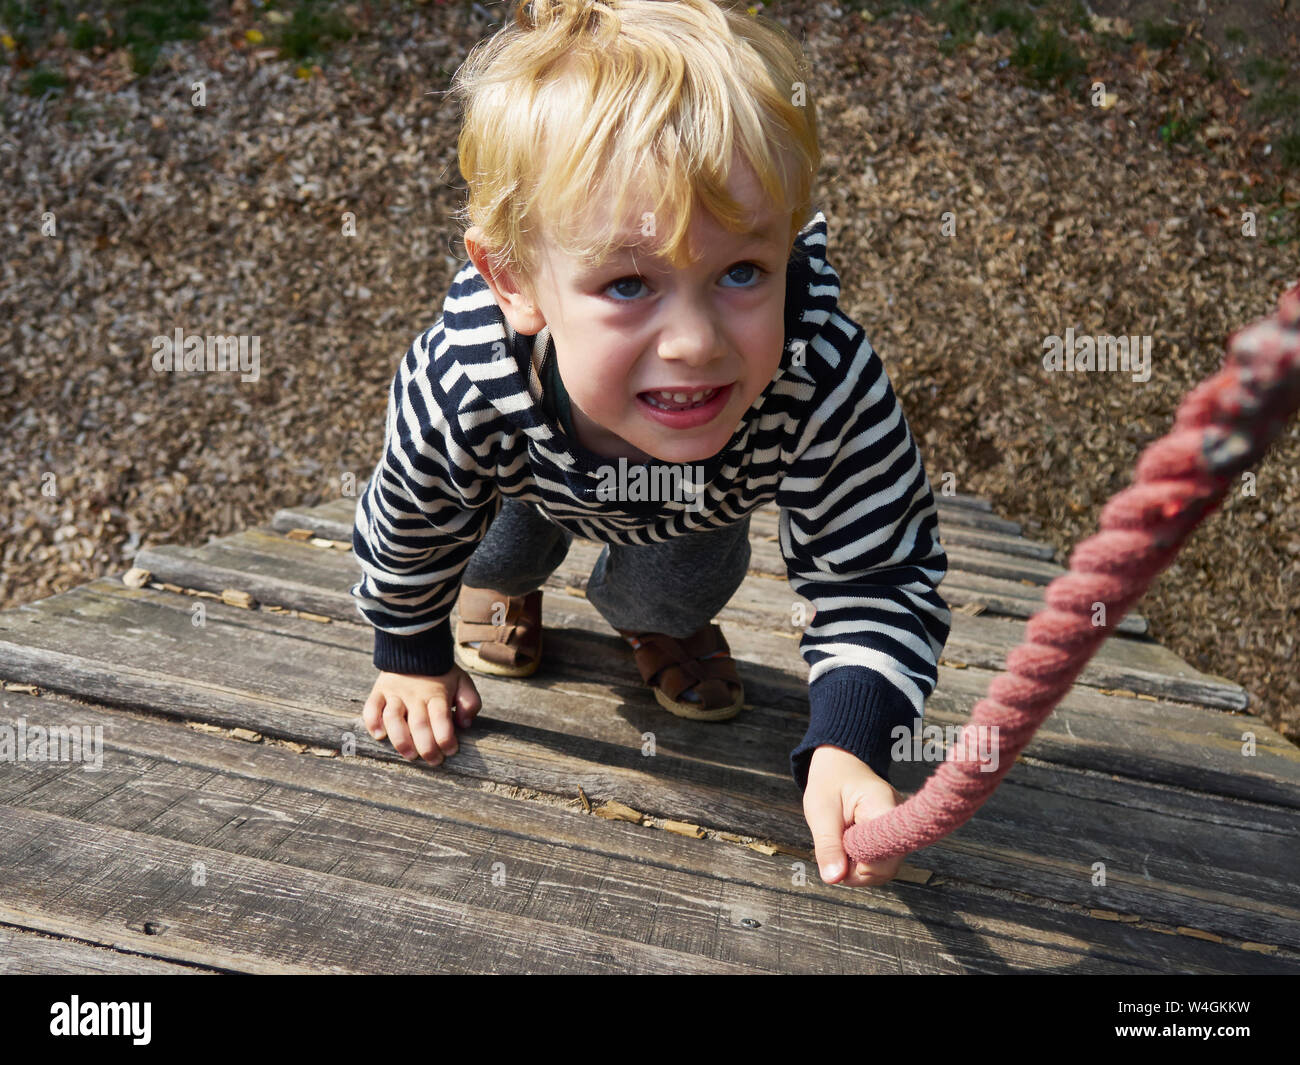 Portrait de petit garçon sur escalade Banque D'Images